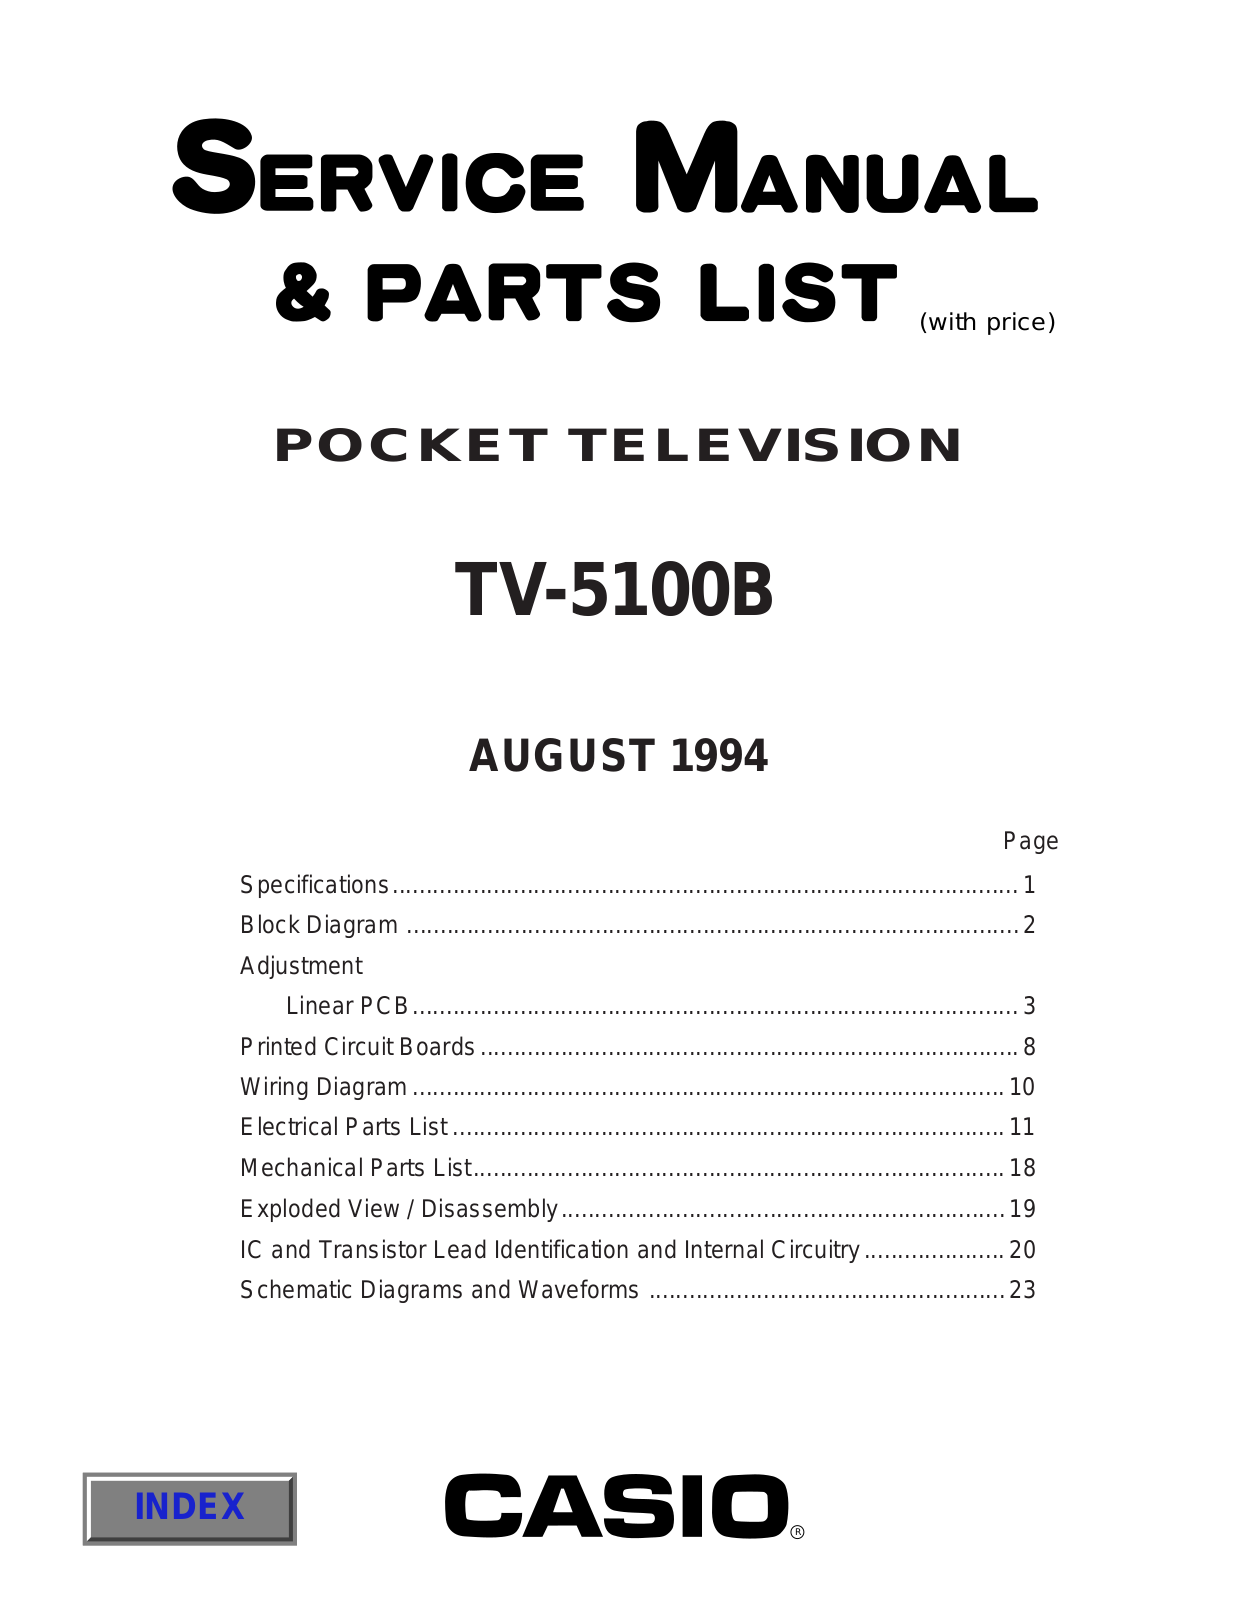 Casio TV-5100B Service manual